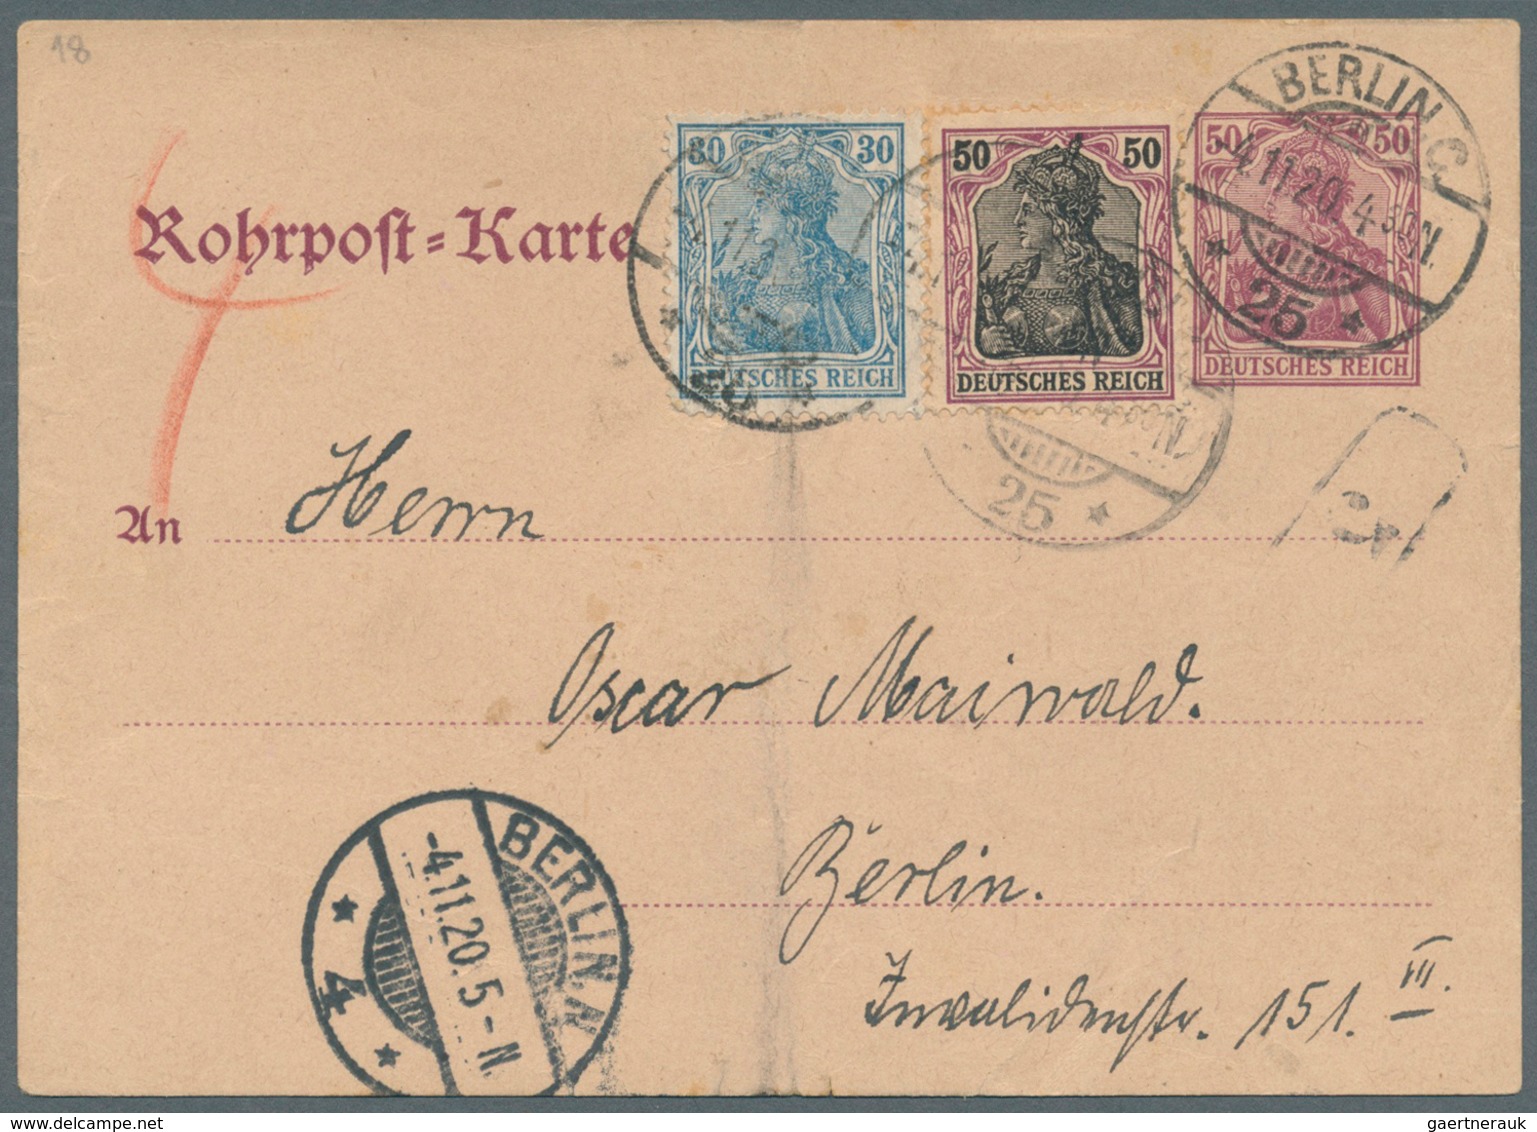 Berlin - Postschnelldienst: 1877/1963, ausstellungsmäßig aufgezogene, spezialisierte Sammlung der Ro